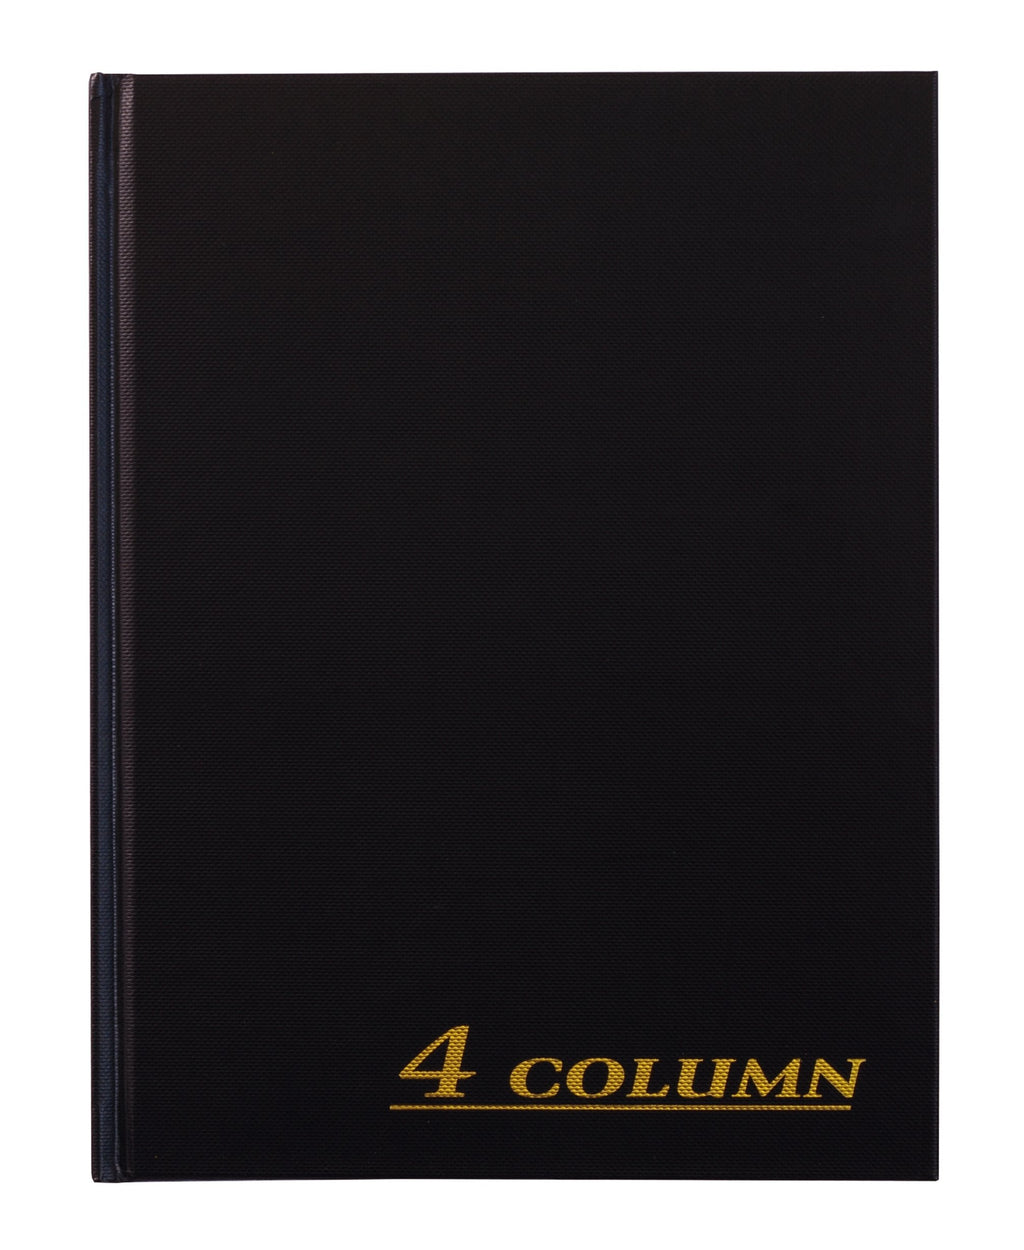 [Australia - AusPower] - Adams Account Book, 4-Column, Black Cloth Cover, 9.25 x 7 Inches, 80 Pages Per Book (ARB8004M) 